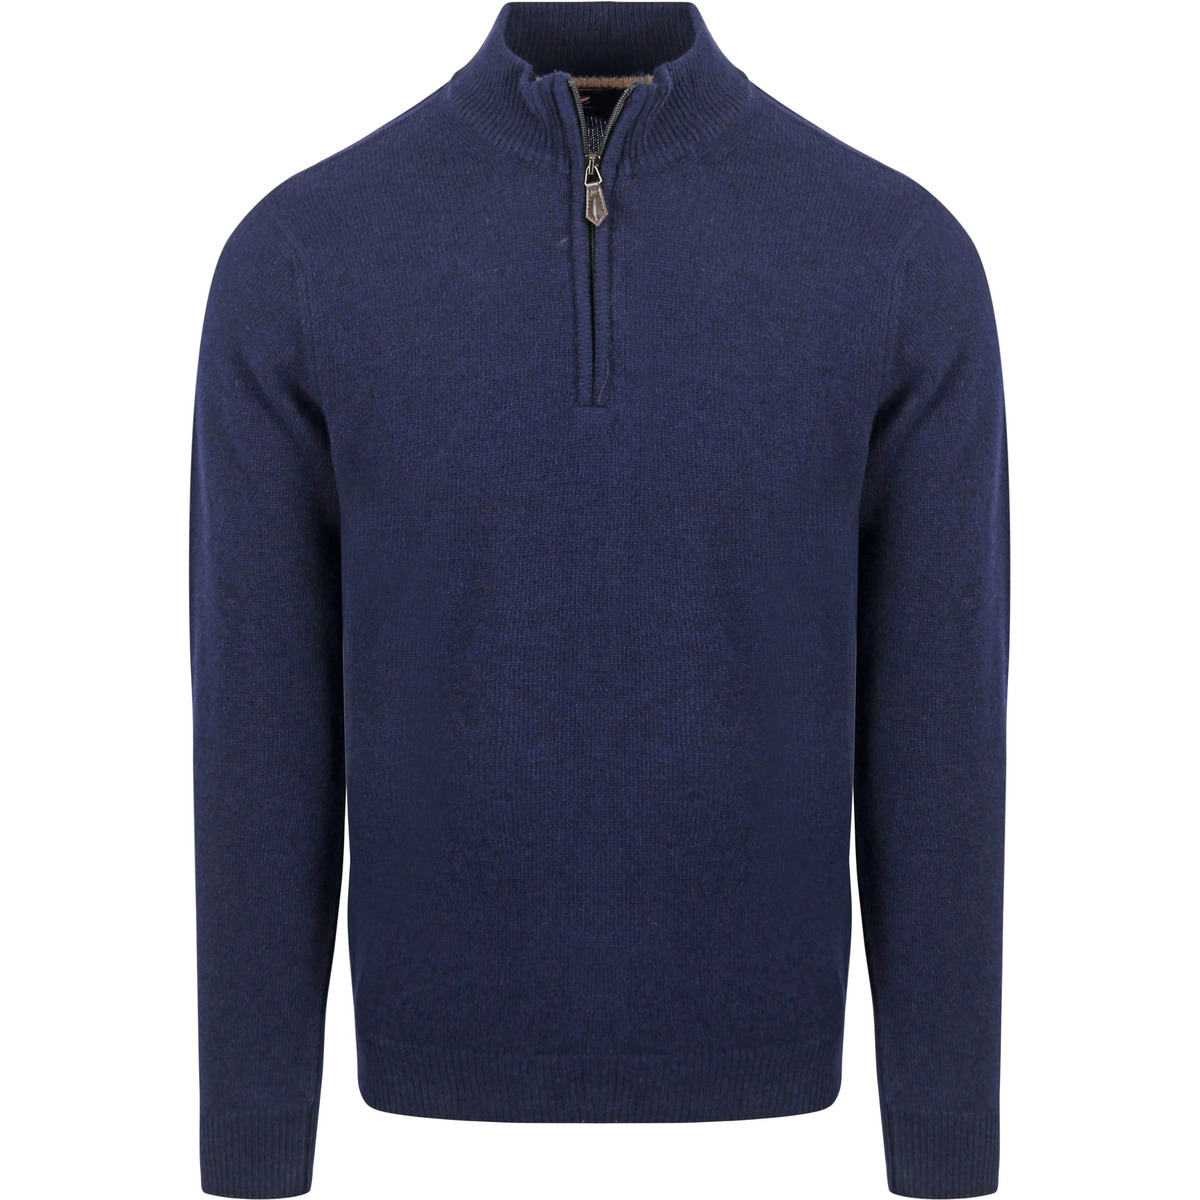 Vêtements Homme Sweats Suitable Pull Demi-Zip Laine D'agneau Marine Bleu